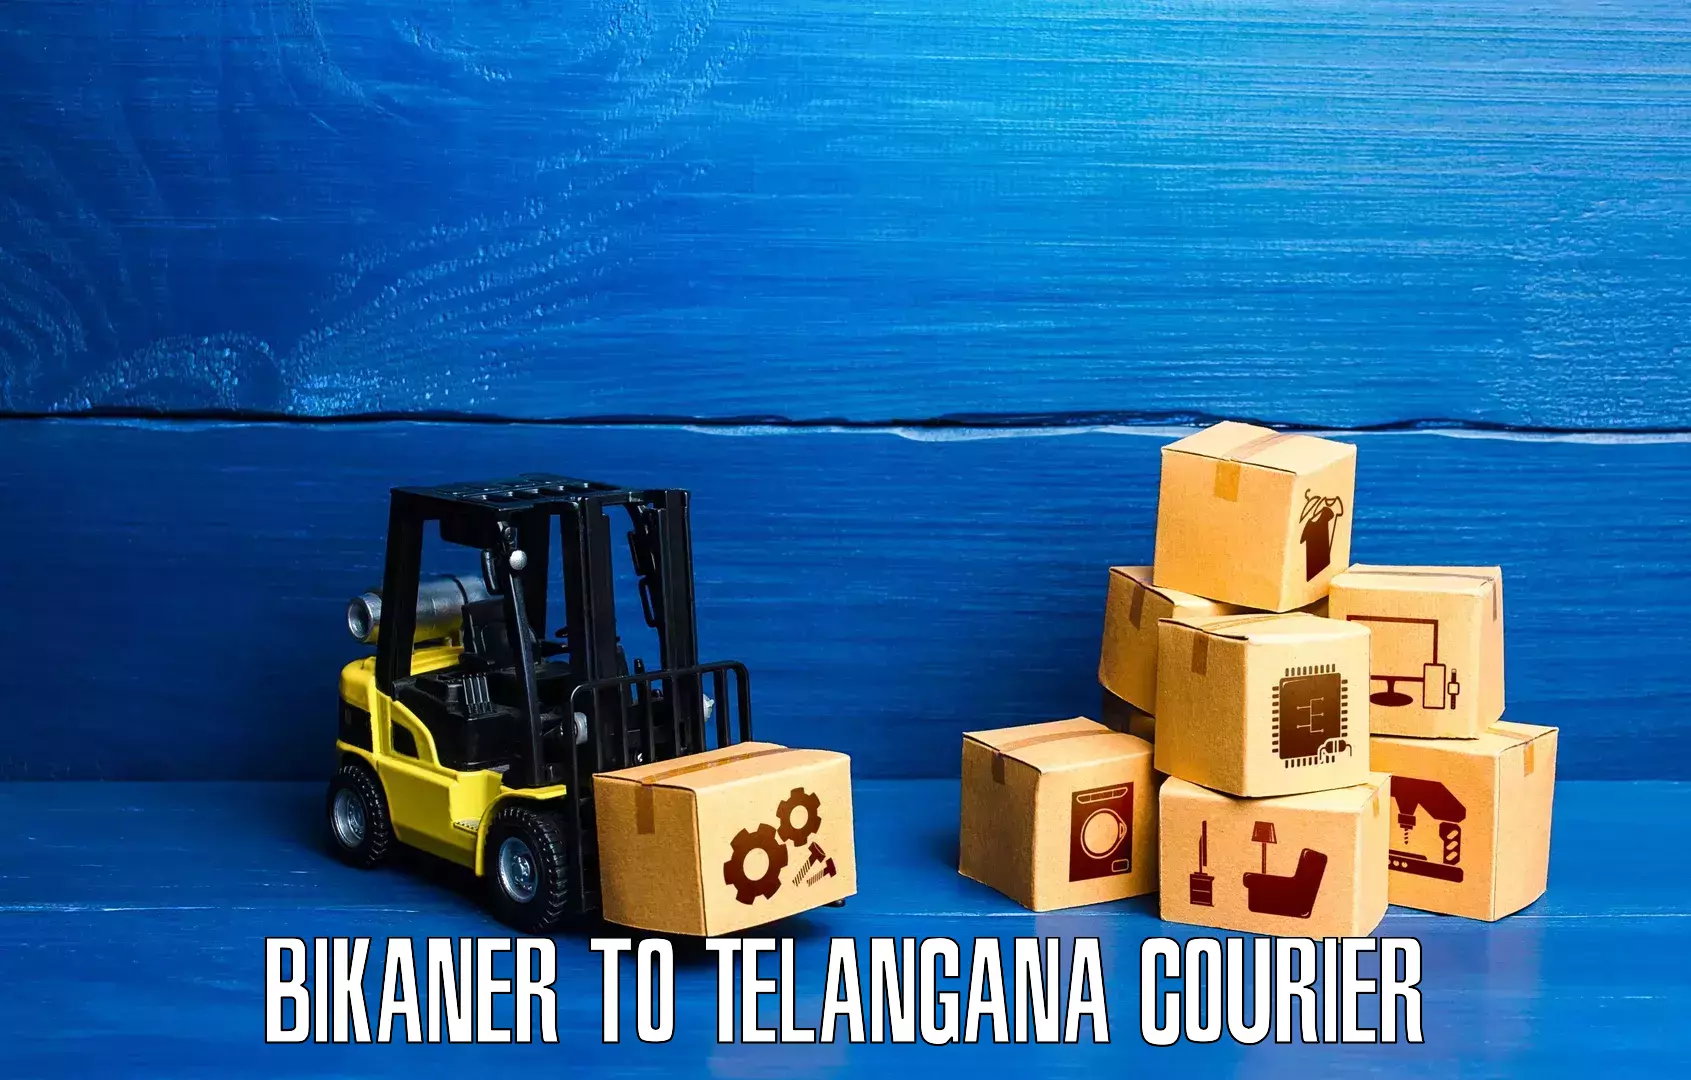 Subscription-based courier in Bikaner to Karimnagar